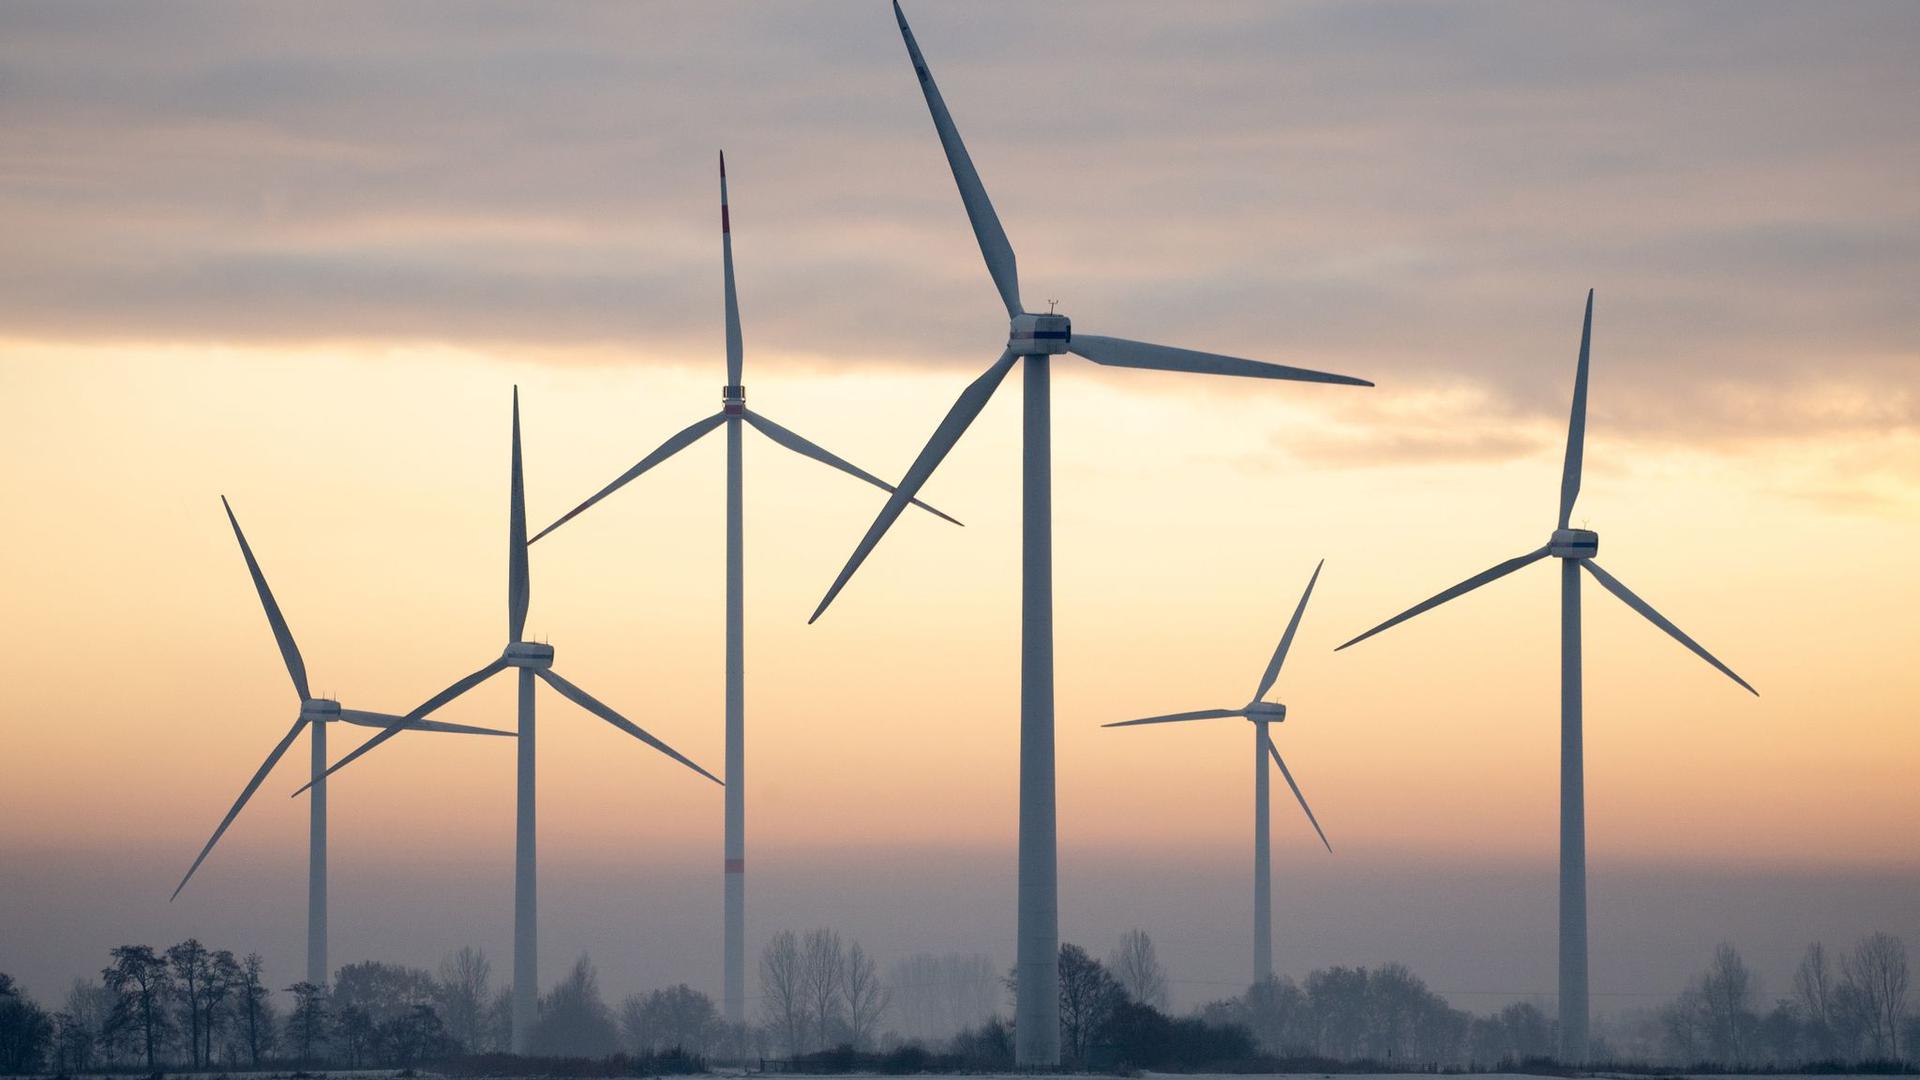 Nach Angaben des Fraunhofer-Instituts für Solare Energiesysteme liegt der Windkraft-Anteil an der Stromerzeugung im laufenden Jahr bei 24,3 Prozent.